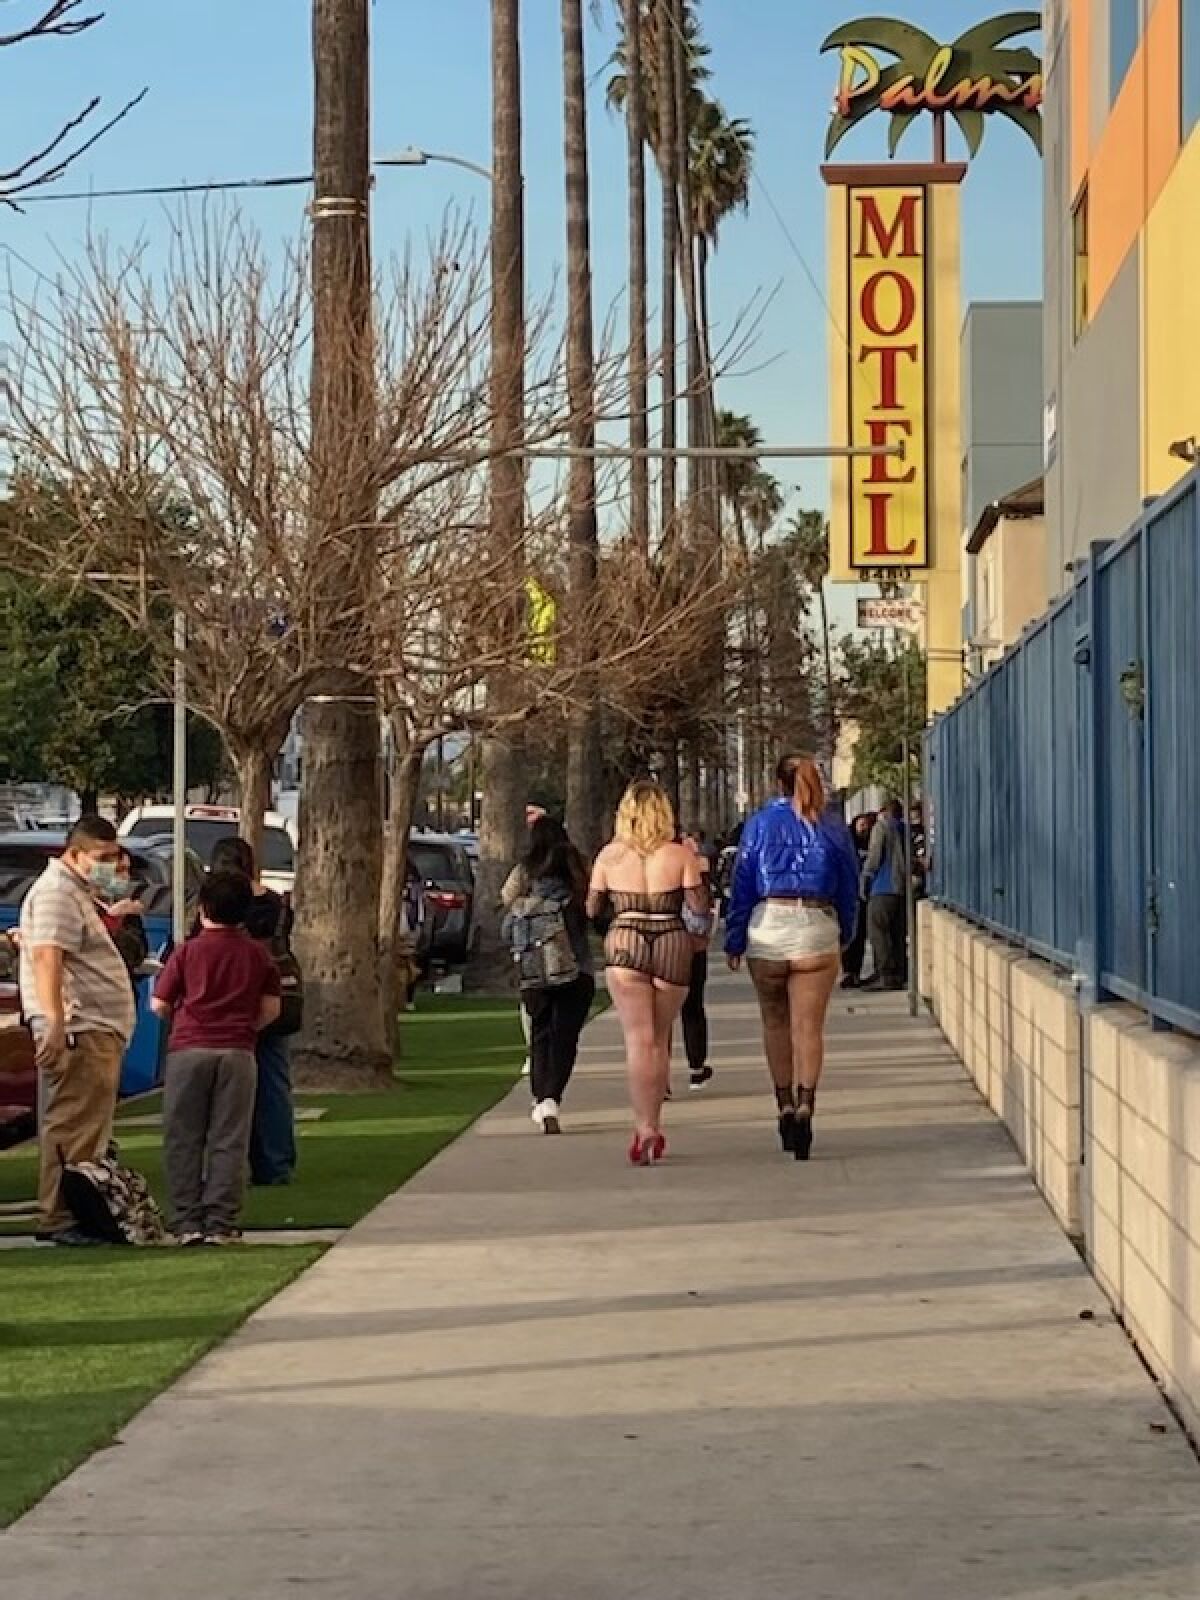 Two women in high heels walk past Palms Motel.